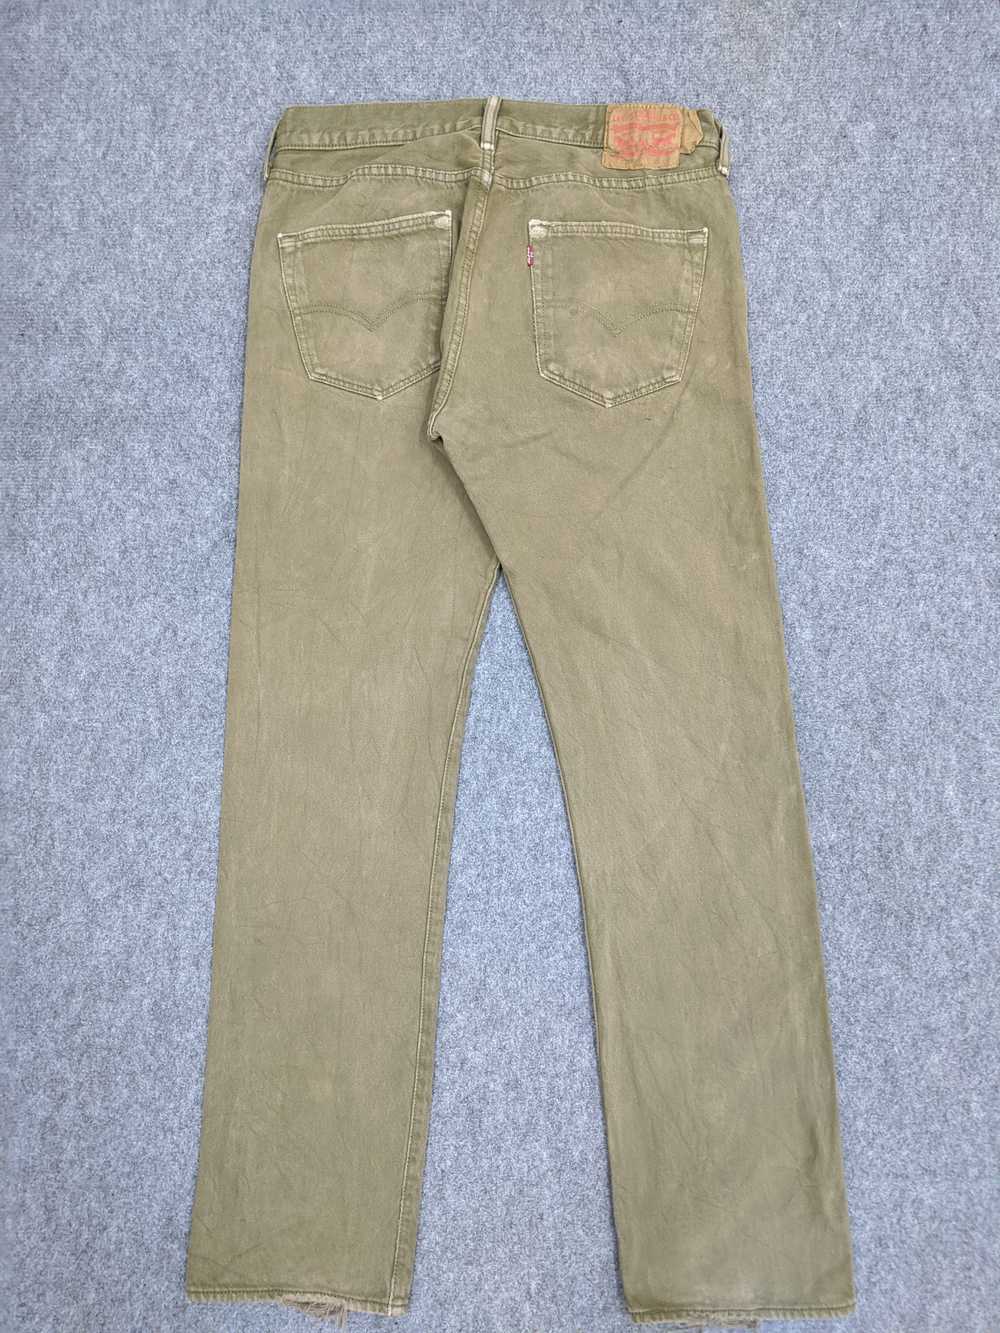 Vintage - Vintage 90s Sun Faded Levis 501 Jeans - image 3